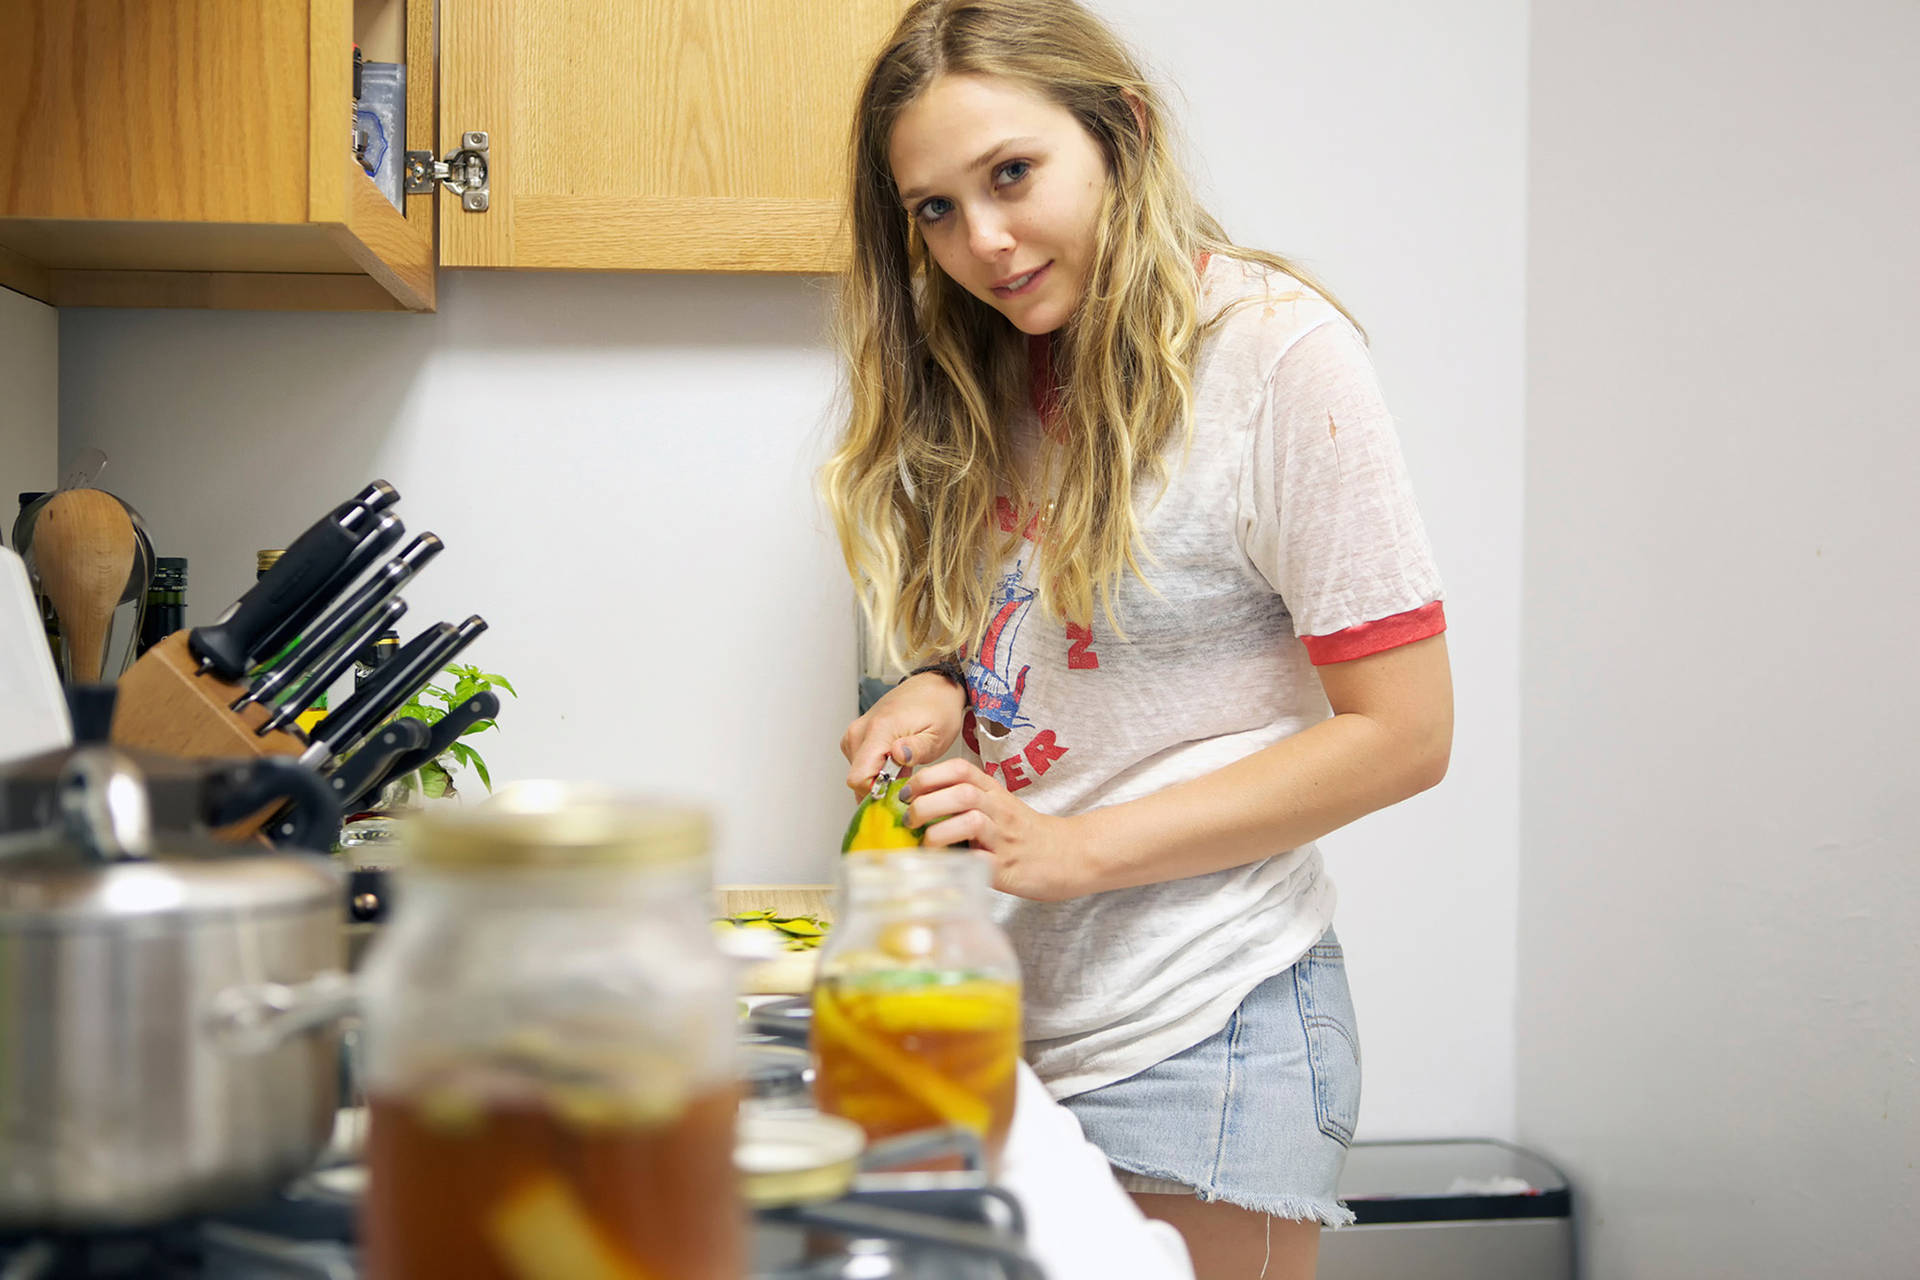 Elizabeth Olsen Cooking At Home Wallpaper